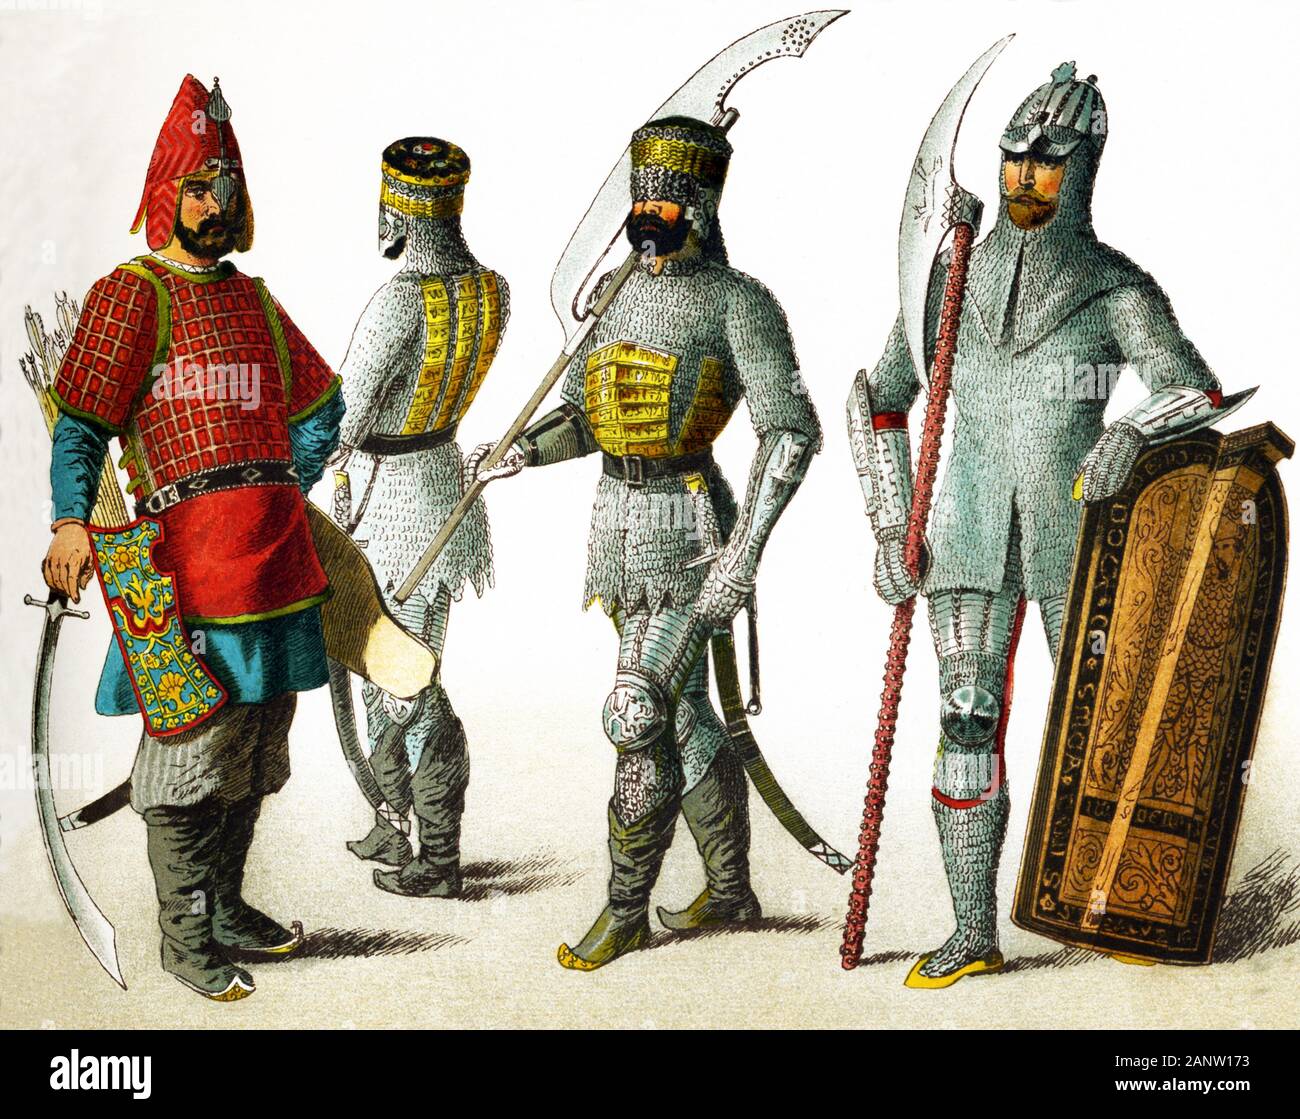 Le figure qui rappresentano guerrieri slava in A.D. 1400. Essi sono, da sinistra a destra: tre guerrieri russo e un guerriero di Boemia. La Boemia è una provincia storica nella parte occidentale della Cecoslovacchia con la sua capitale a Praga. L'illustrazione risale al 1882. Foto Stock